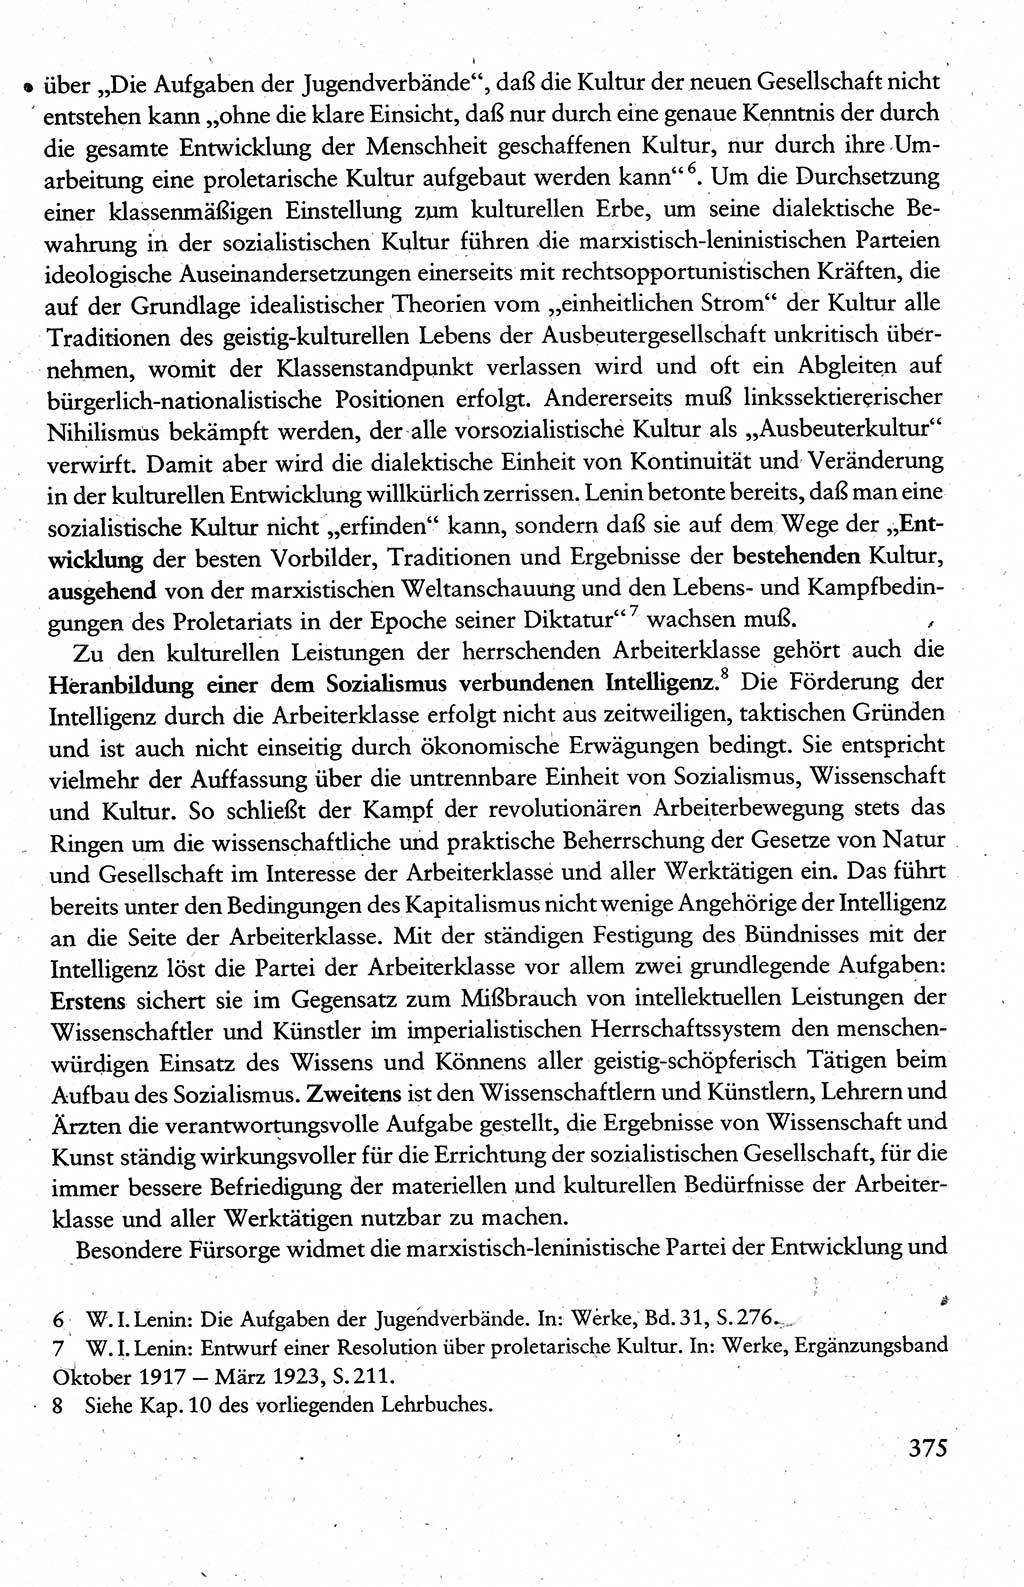 Wissenschaftlicher Kommunismus [Deutsche Demokratische Republik (DDR)], Lehrbuch für das marxistisch-leninistische Grundlagenstudium 1983, Seite 375 (Wiss. Komm. DDR Lb. 1983, S. 375)